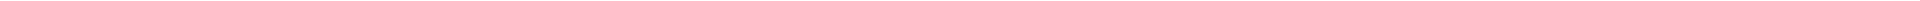 Элайнеры - цены на капы для выравнивания (исправления) прикуса, цены в Астане, Алматы, Атырау, Усть-Каменогорск, Уральск, Кокшетау в Казахстане, фото 18